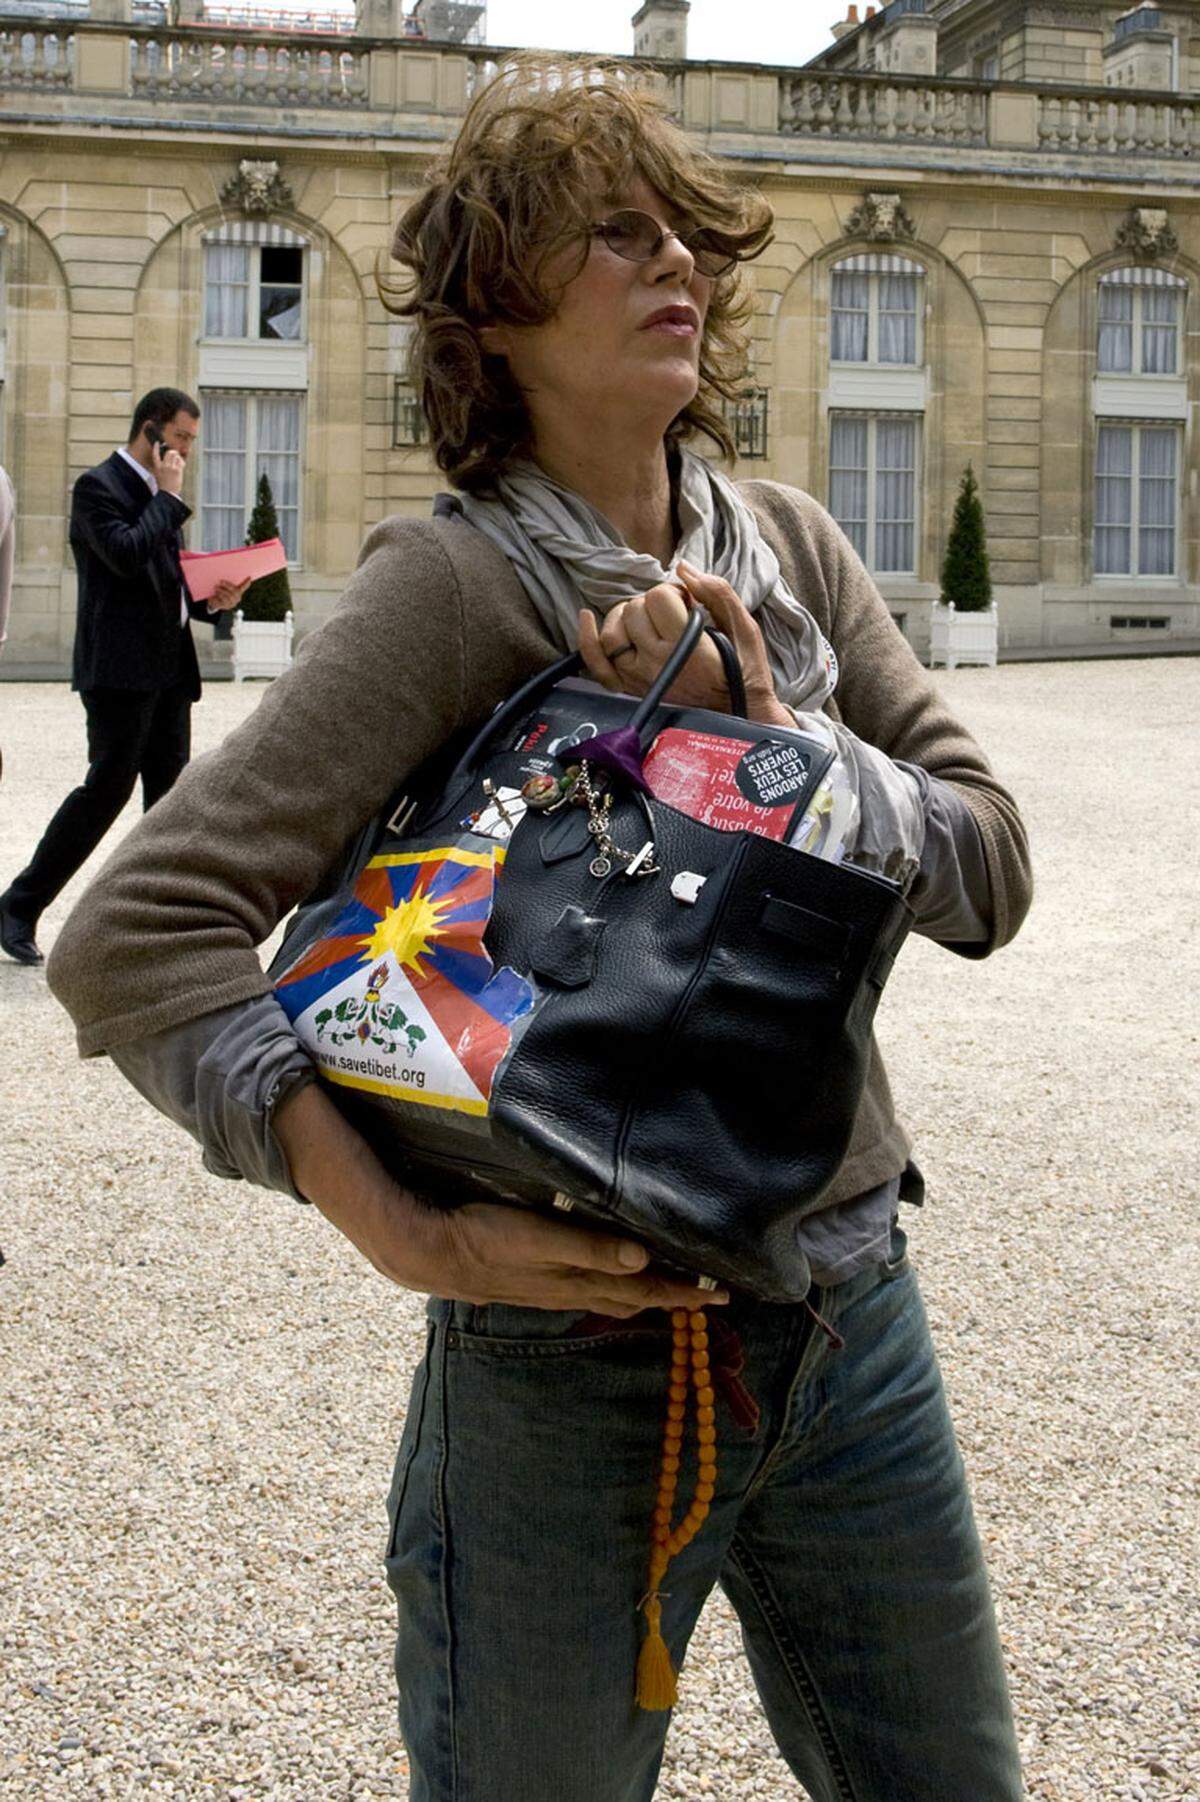 Handtaschen von Hermès gelten nicht nur aufgrund der prominenten Namenspatronen, etwa Grace Kelly oder Jane Birkin, sondern auch aufgrund der langen Wartelisten als besonders luxuriös und begehrenswert. Doch angeblich sind die Taschen des französischen Luxusmodehauses gar nicht so beliebt.